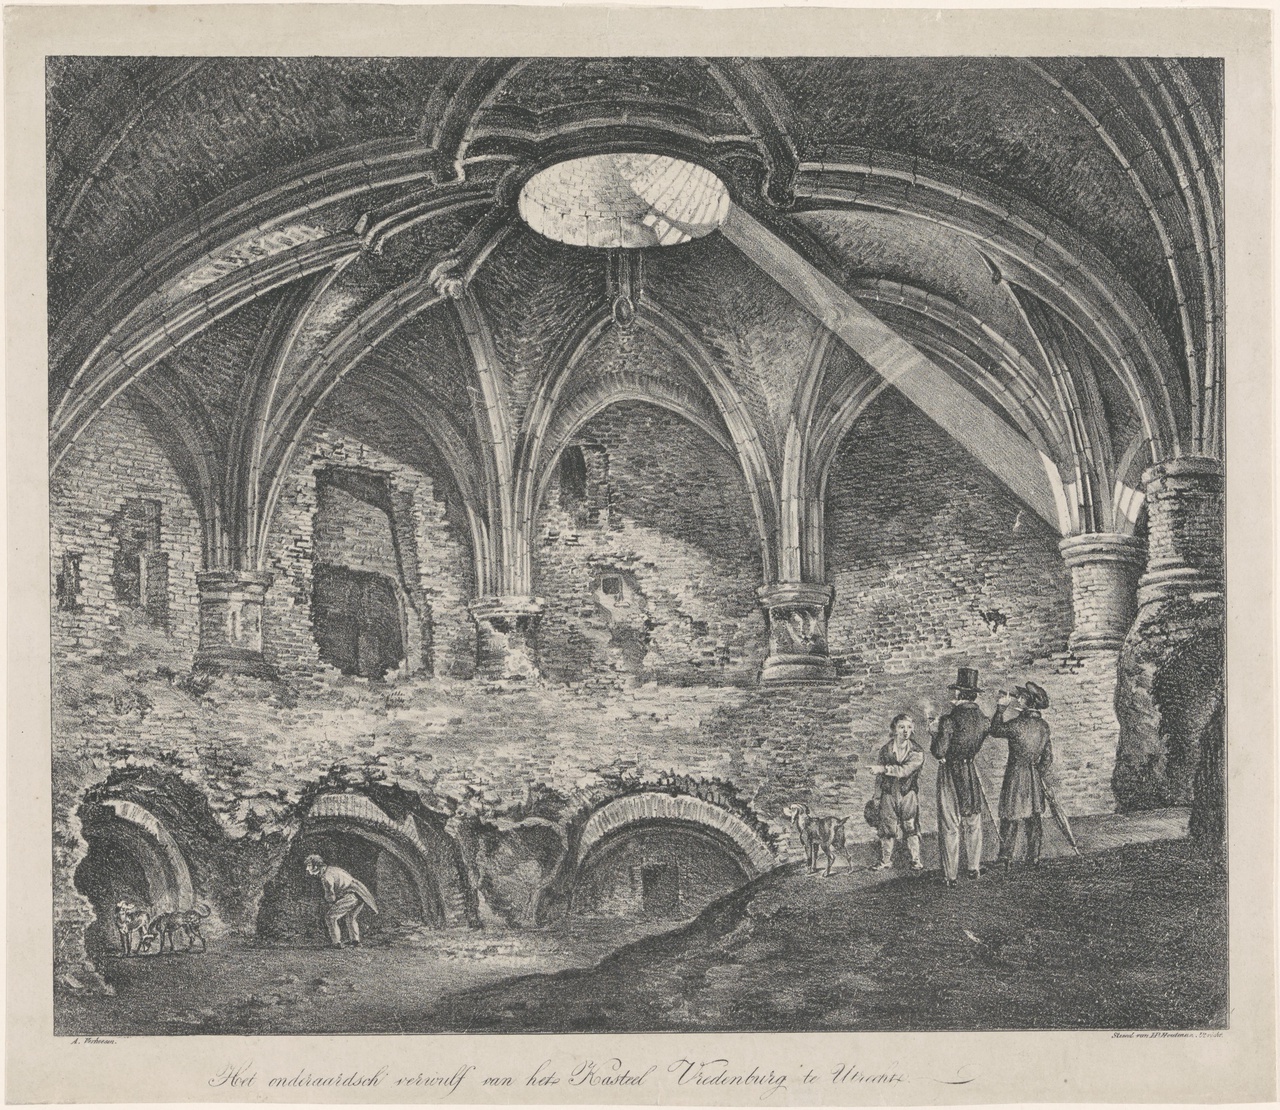 Het onderaards gewelf van het zuidelijk bolwerk van kasteel Vredenburg in Utrecht